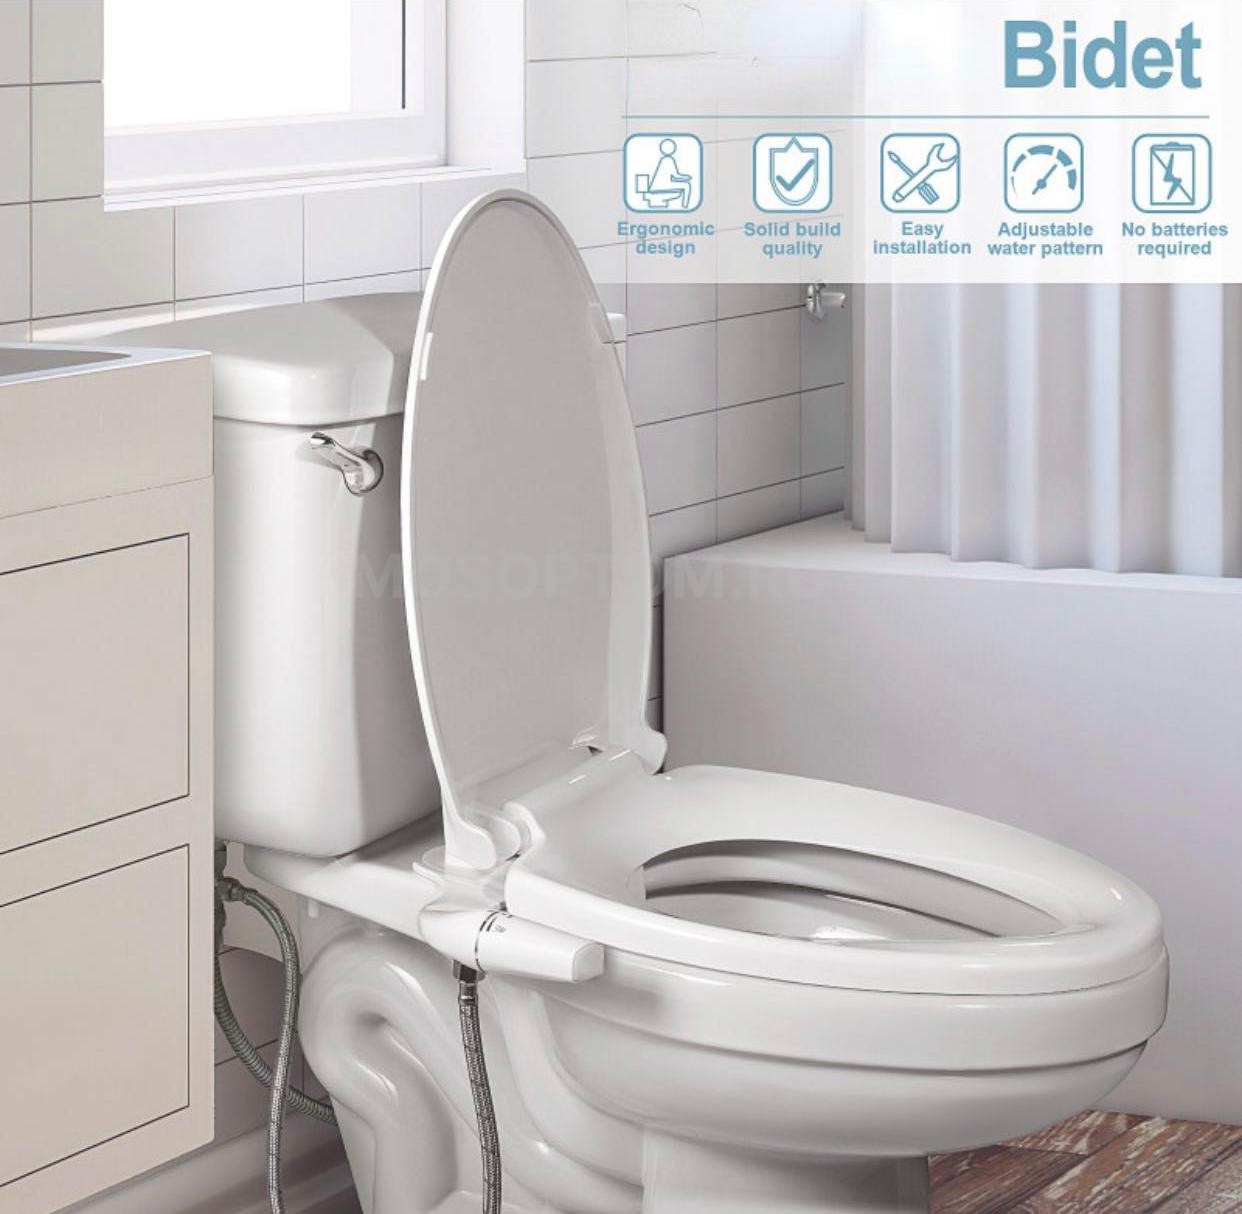 Биде-накладка гигиенический душ для унитаза Toilet Bidet Attachment оптом - Фото №3